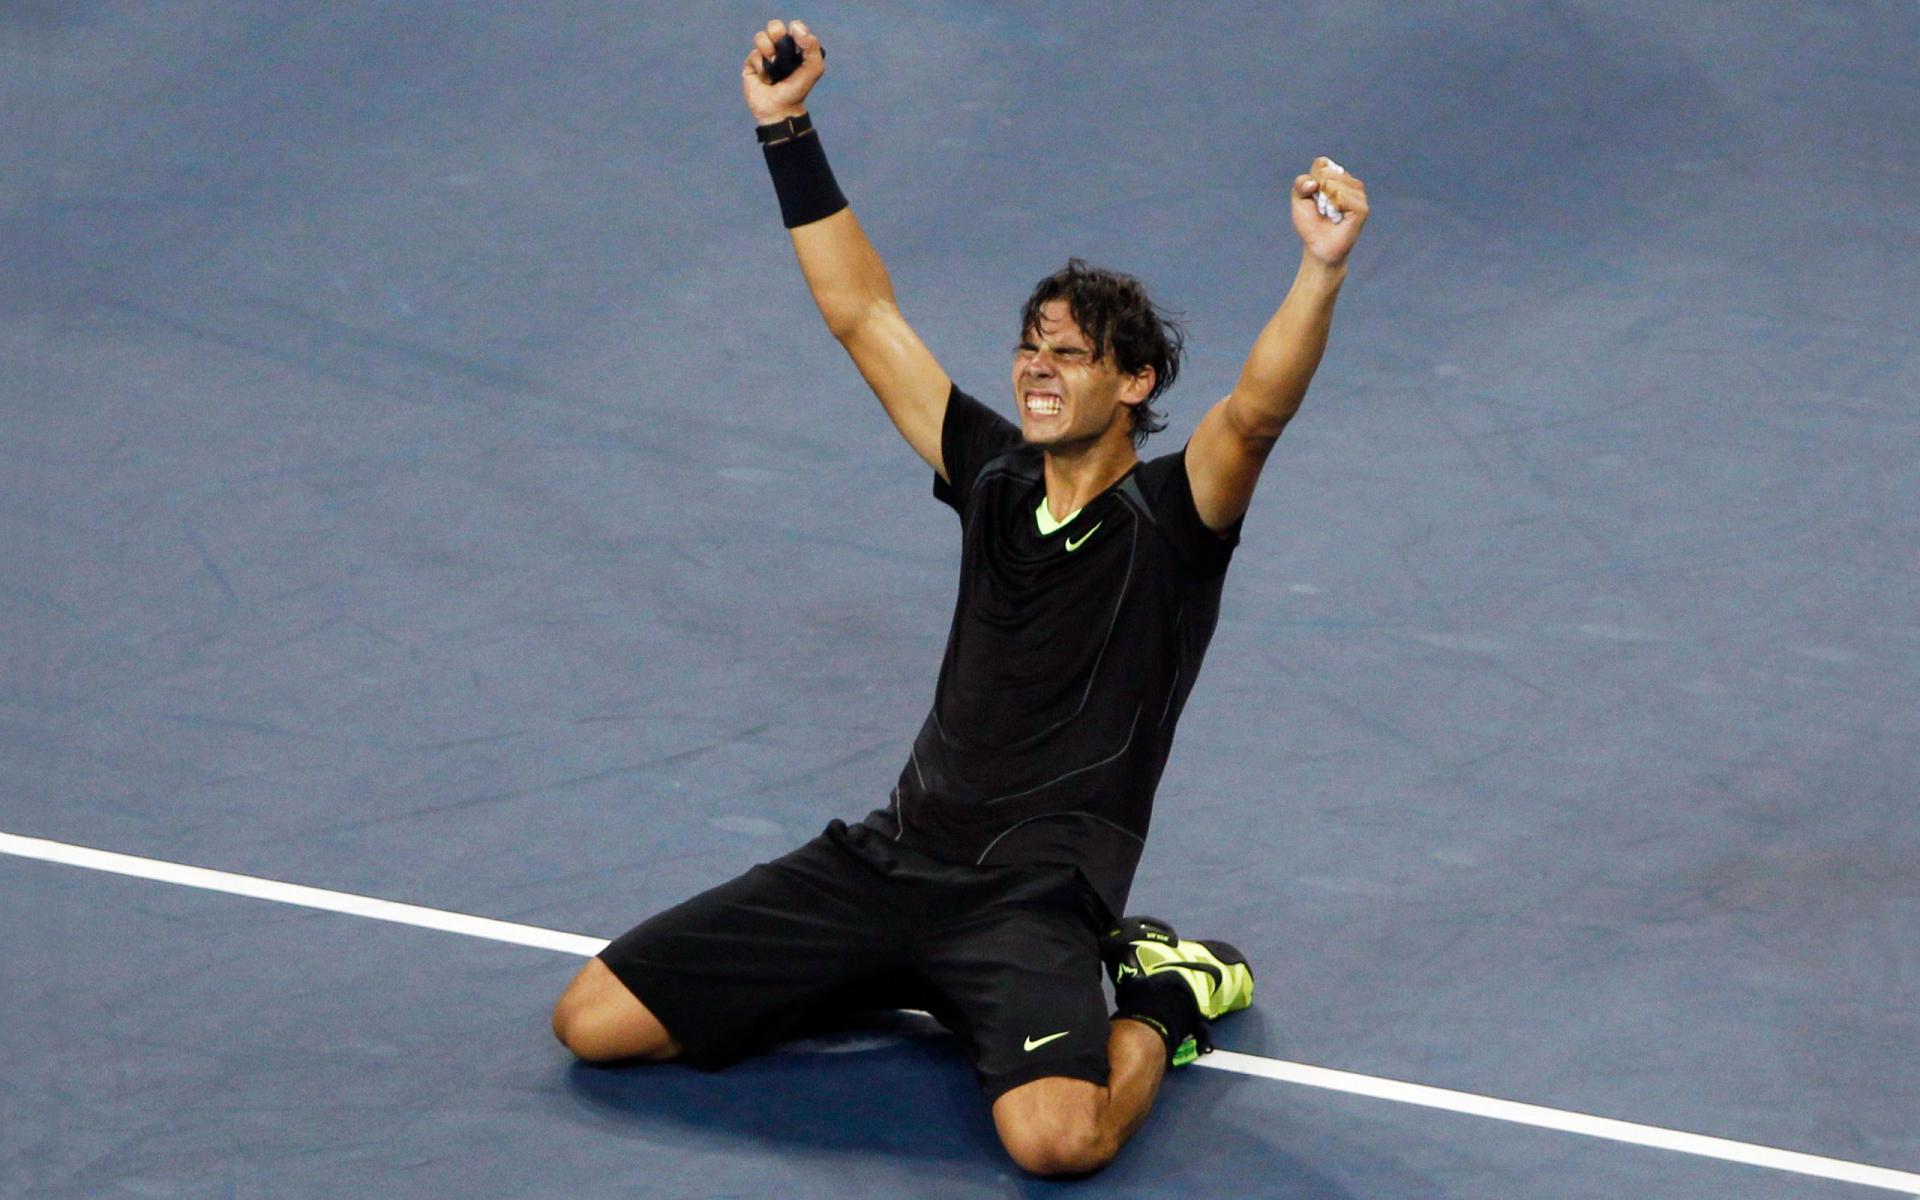 Rafael Nadal Victory Tenis Black Equipment Wide Tennis